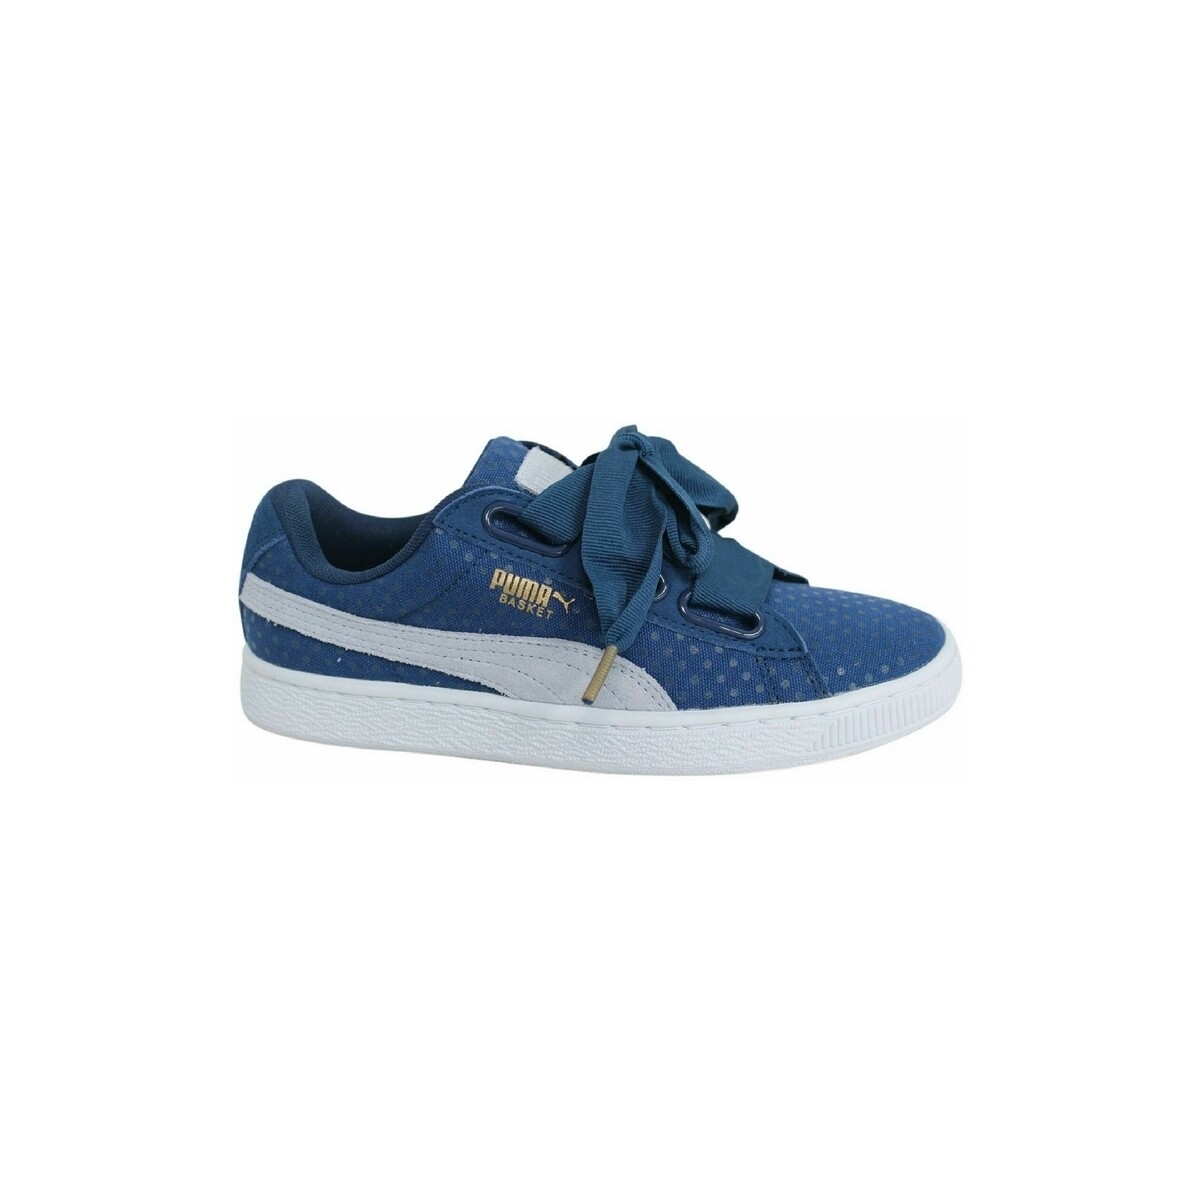 Scarpe Donna Sneakers Puma 363371 Blu